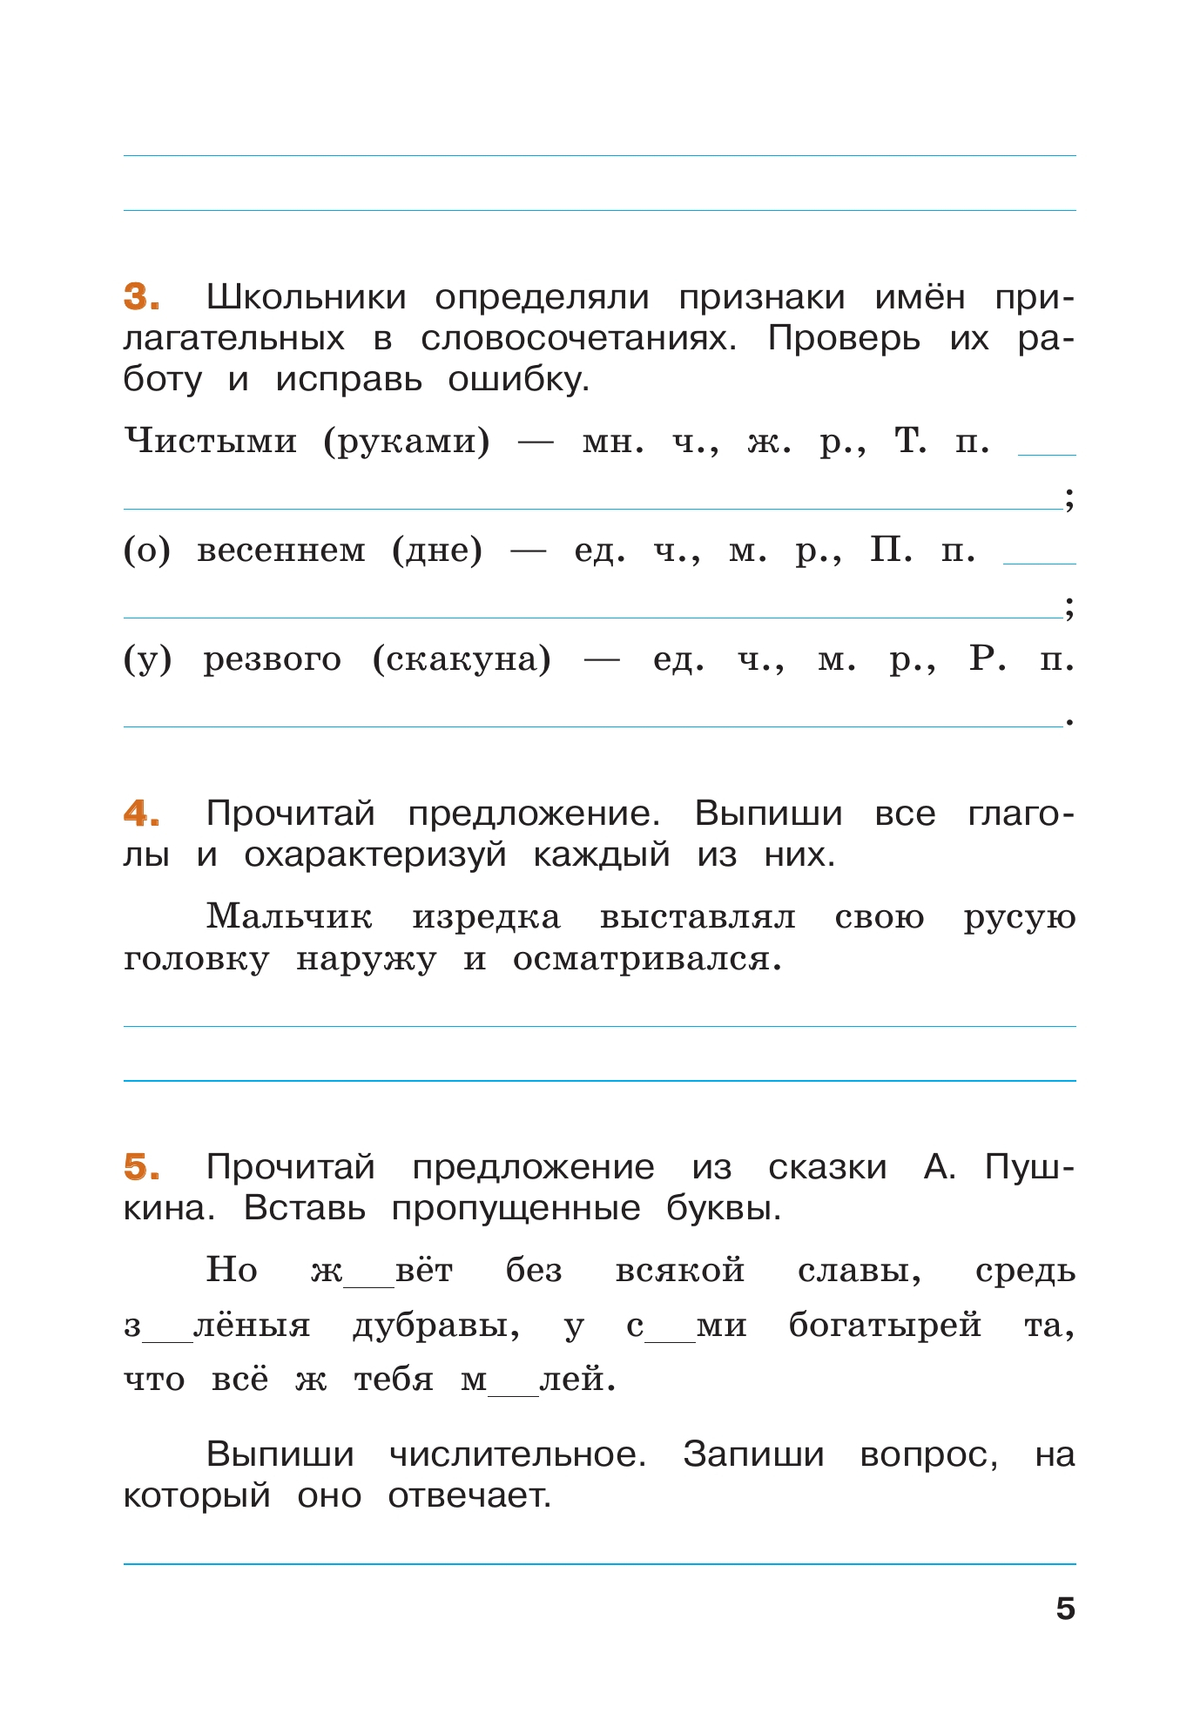 Русский язык. Летние задания. Переходим в 5-й класс 11